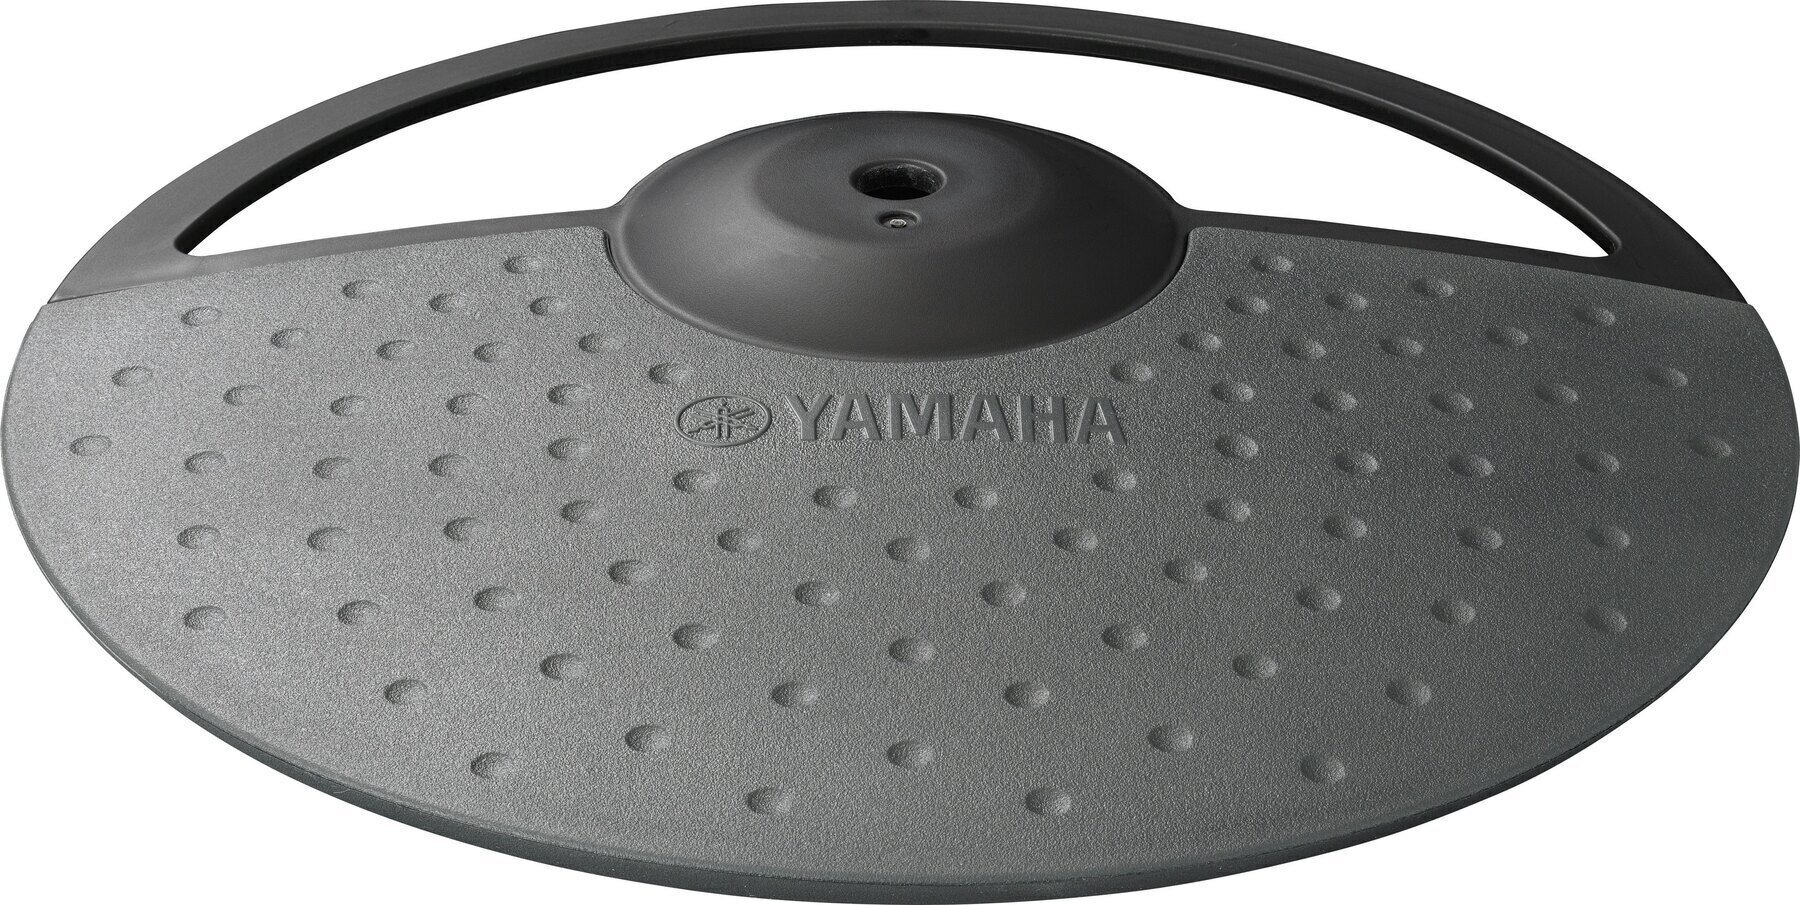 Symbaali-padi Yamaha PCY 90 Cymbal pad